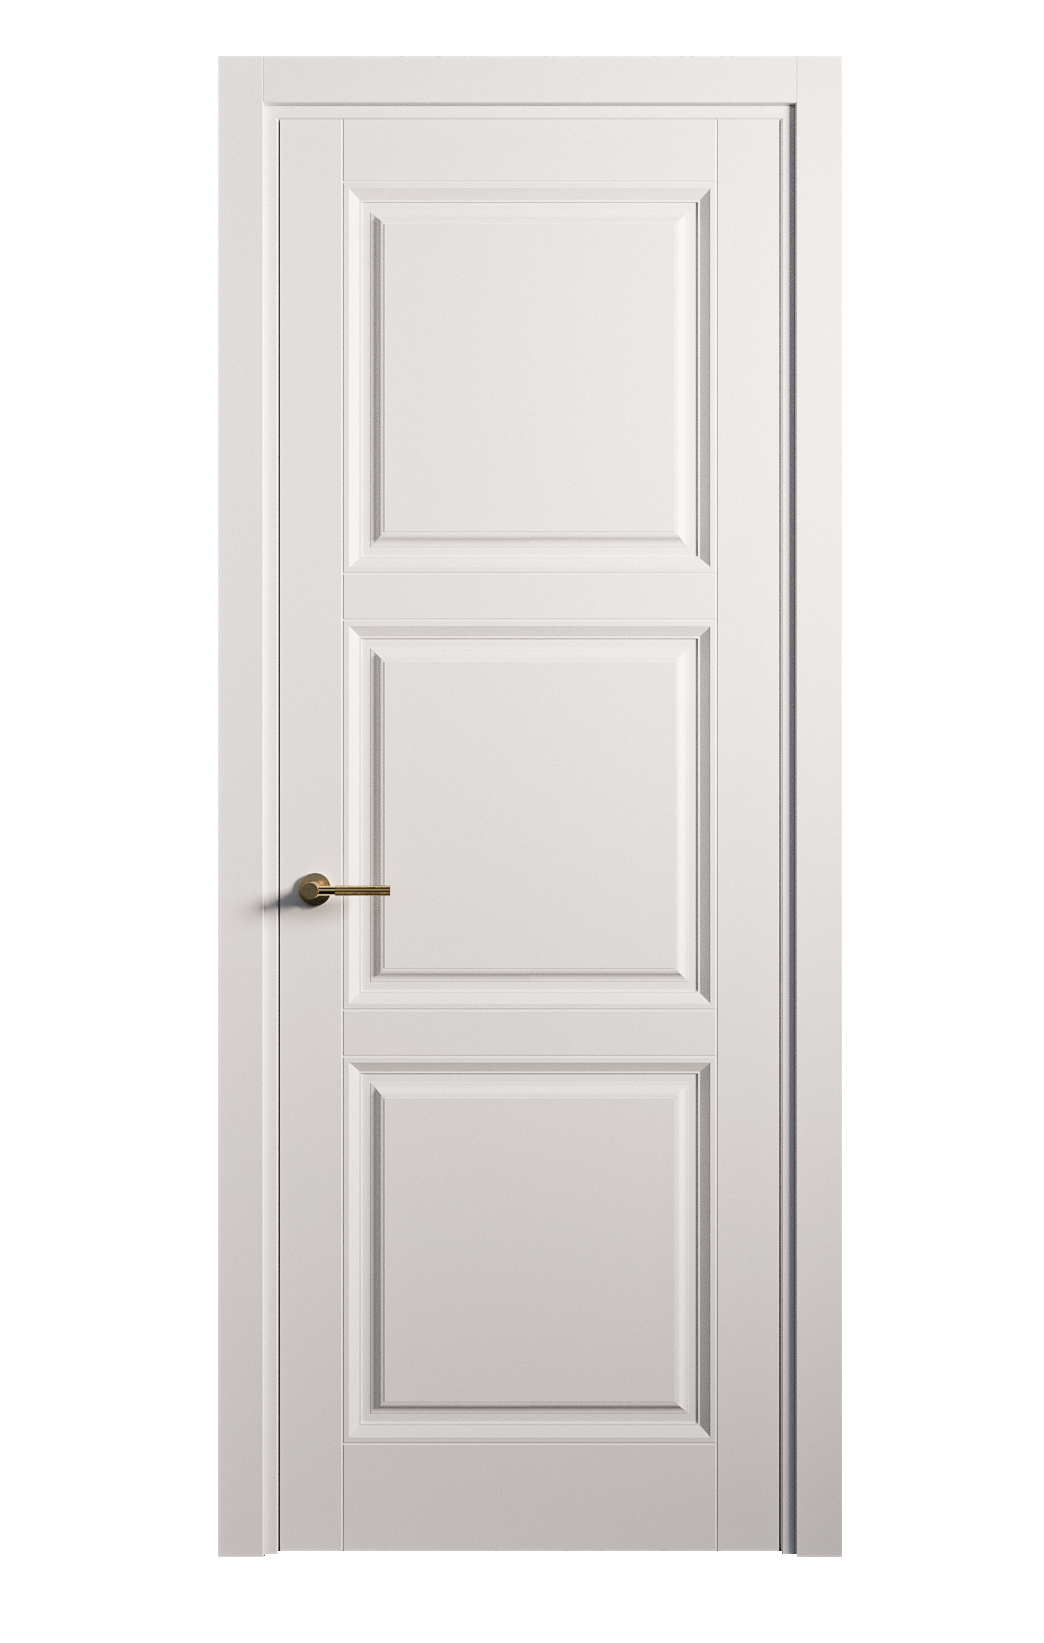 Межкомнатная дверь Venezia-3 глухая эмаль ral 9003 25732